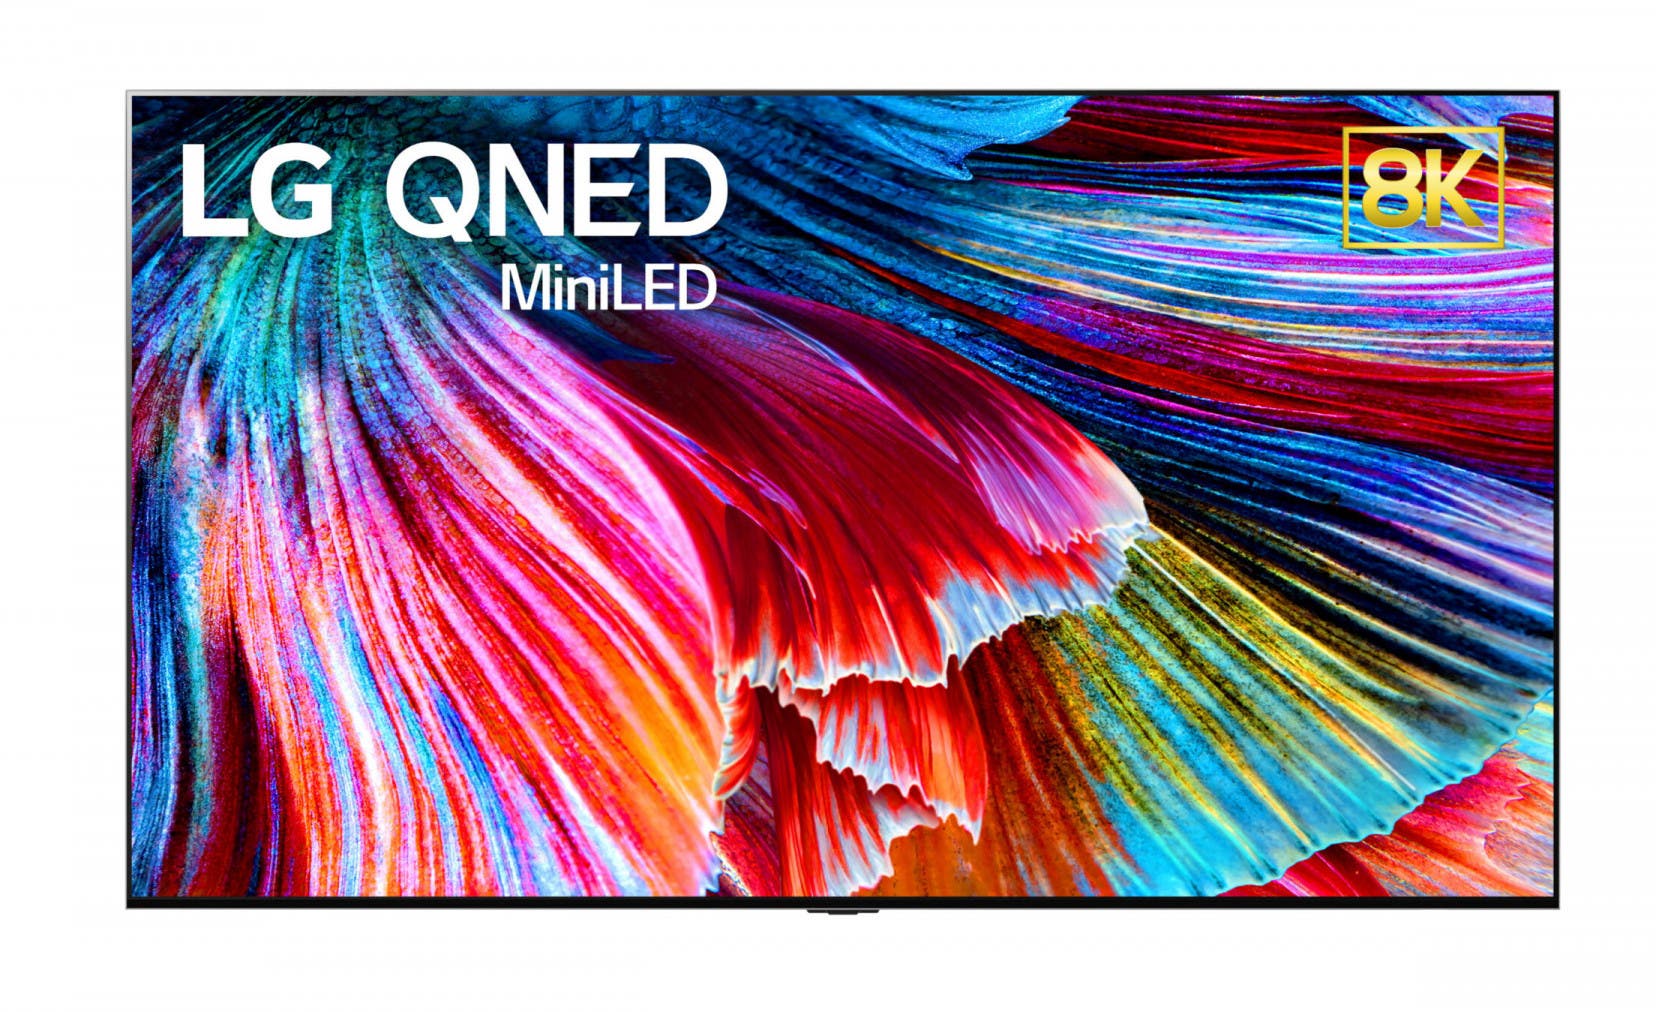 LG QNED Mini LED TV